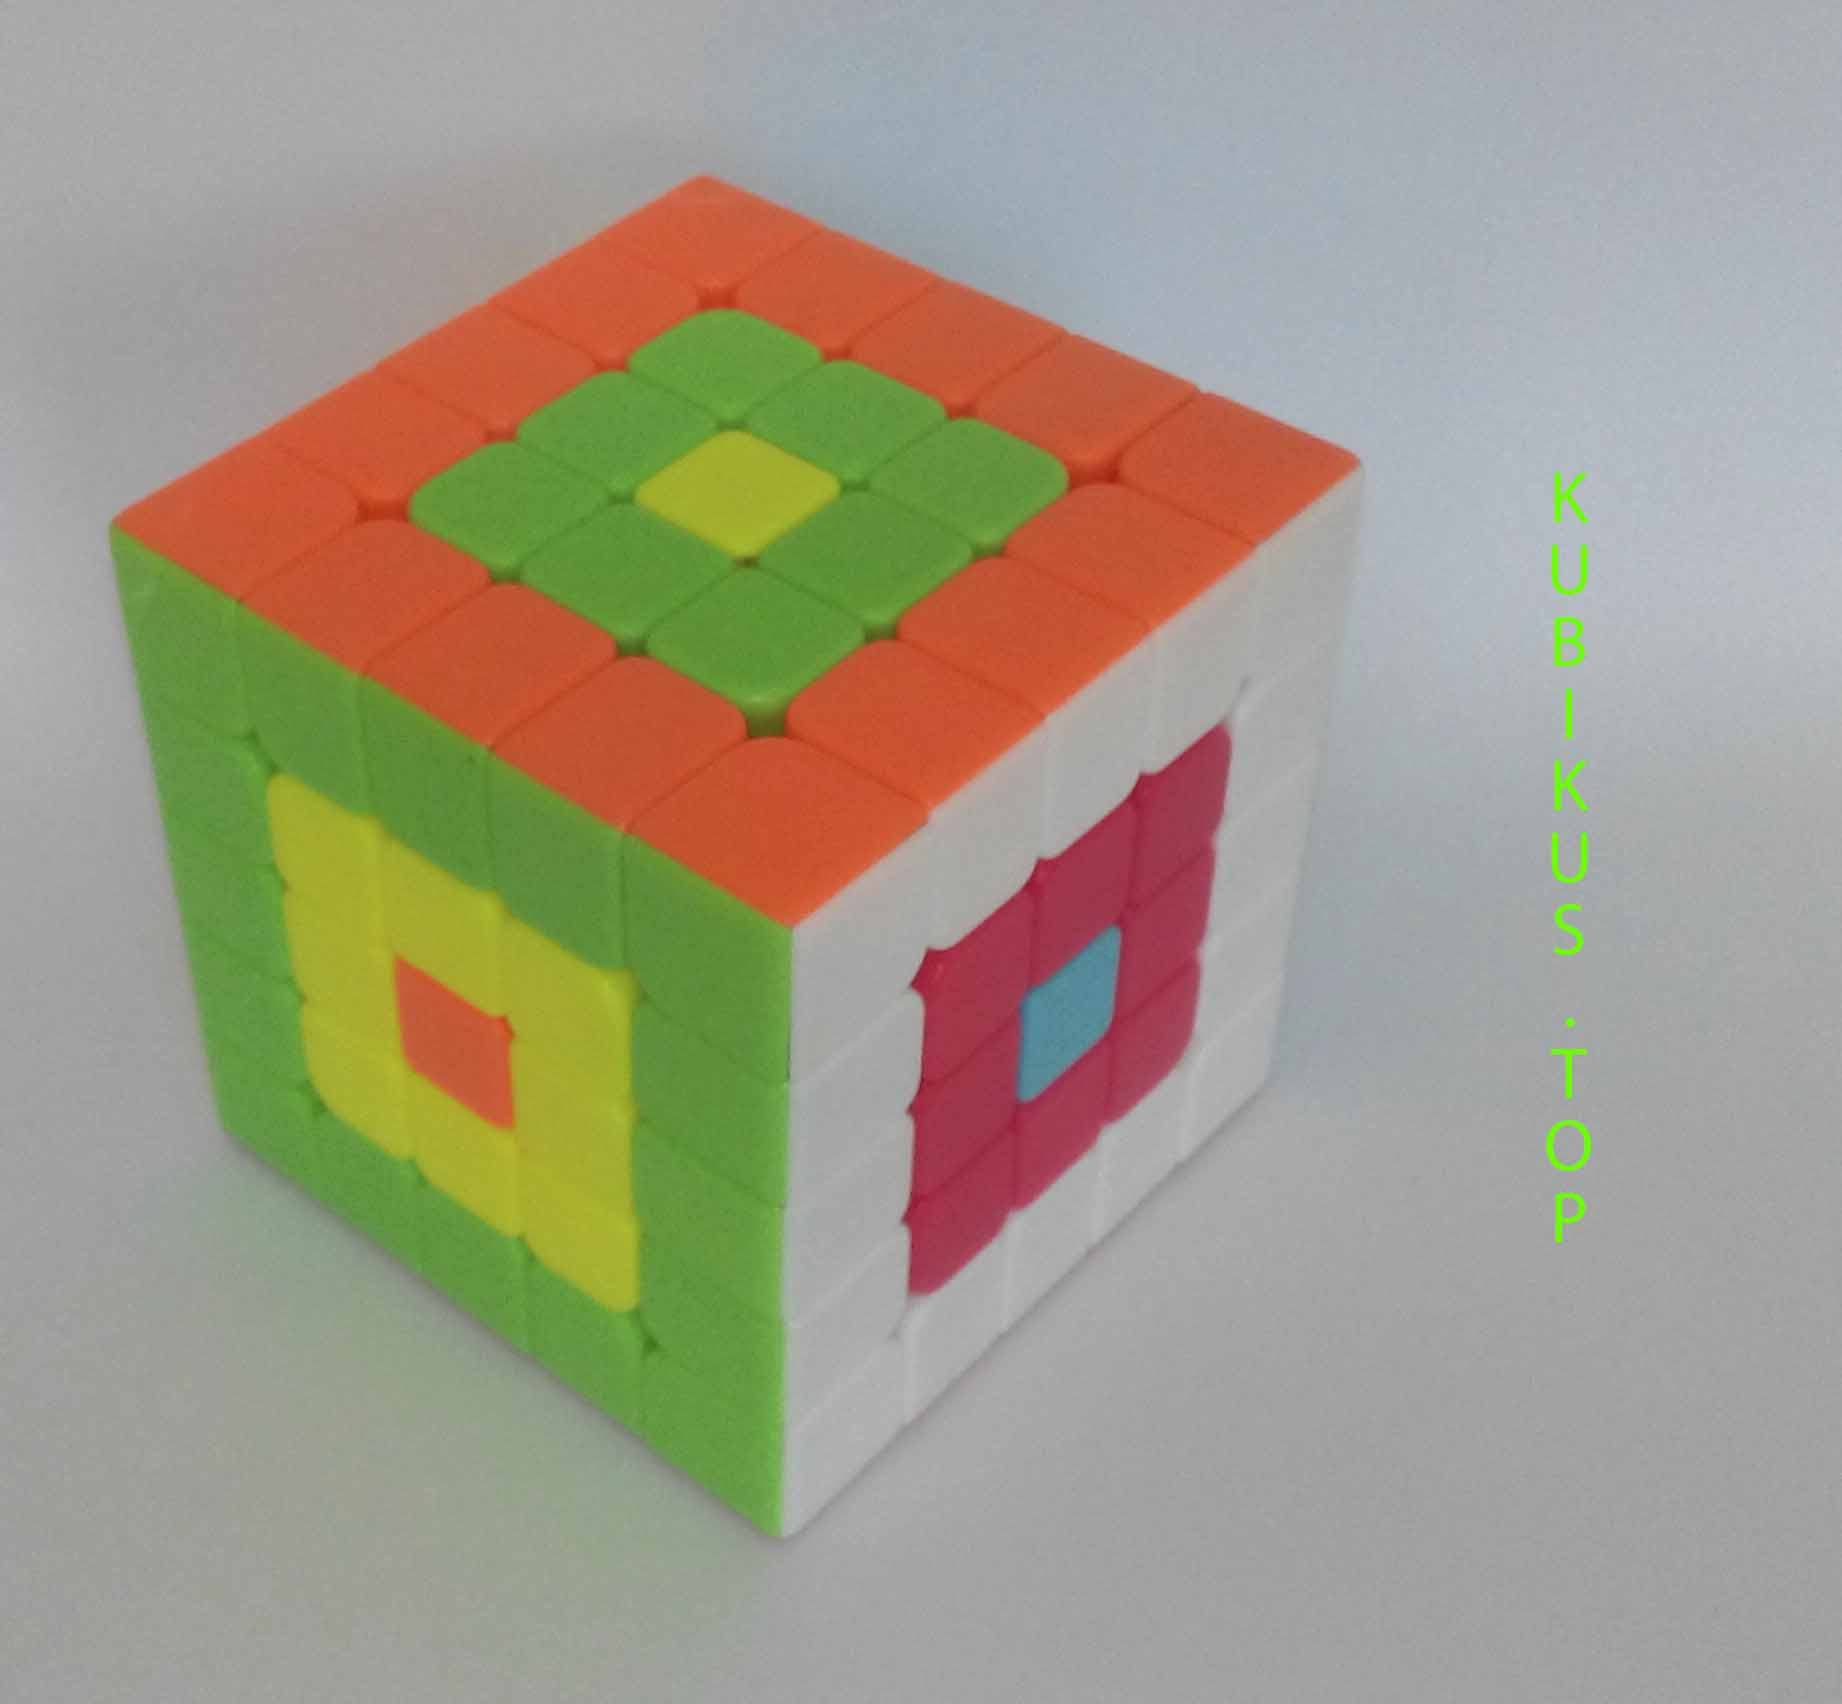 Как собрать кубик рубика 4х4 для начинающих схема картинками шаг за шагом